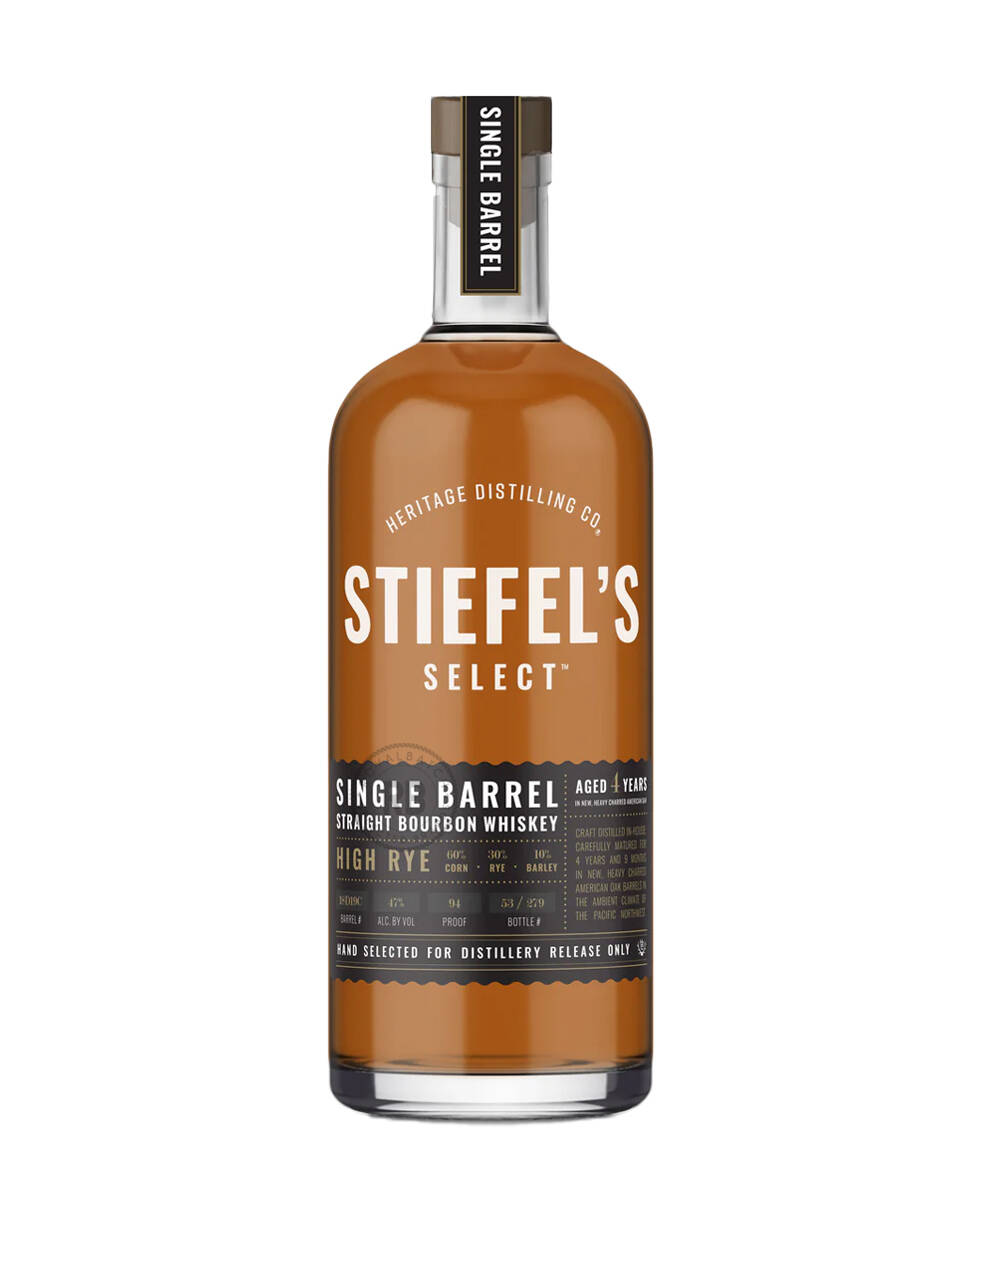 Stiefels Select Heritage Distilling Co Singe Barrel High Rye Bourbon Whiskey